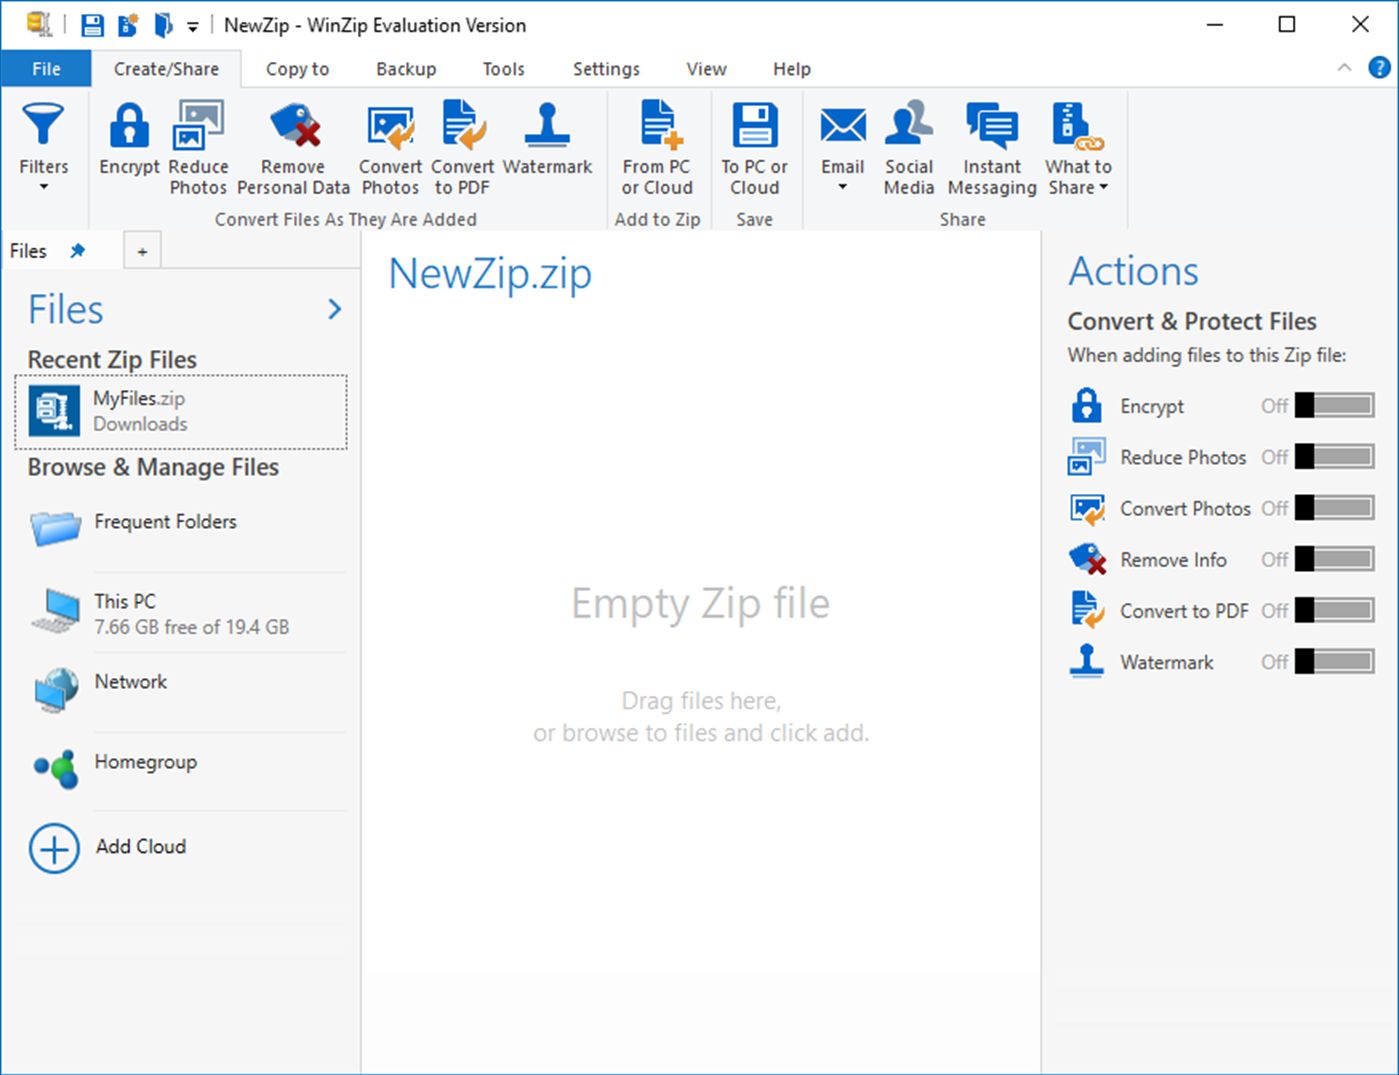 Resmi WinZip uygulaması Microsoft Store'a geldi